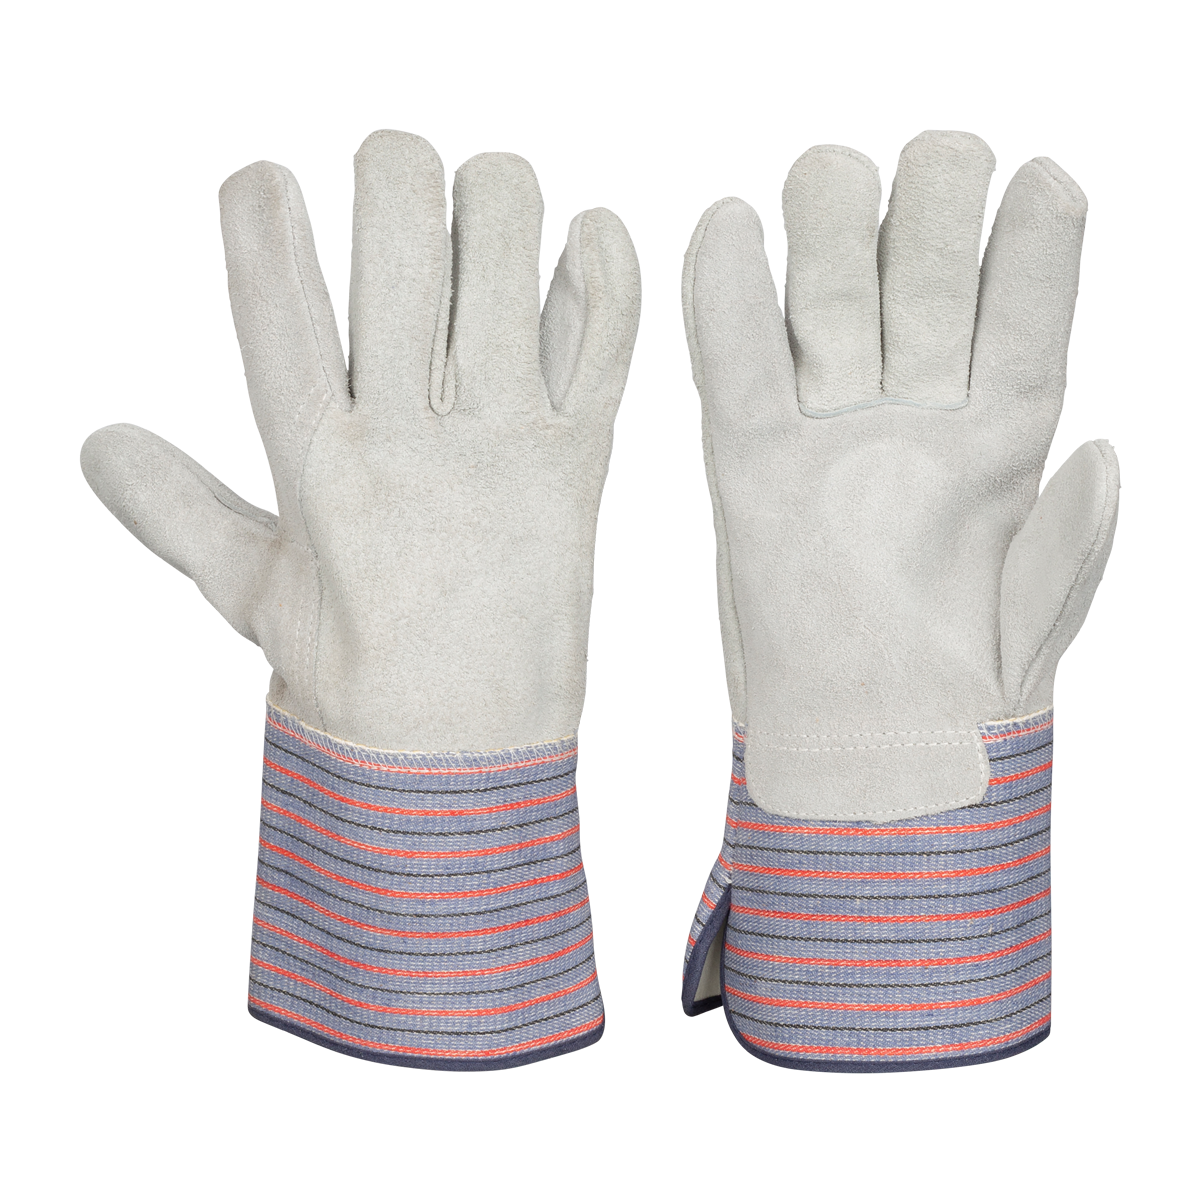 Salisbury Size 11-11.5 inch Leather Glove Protectors ILP10/11